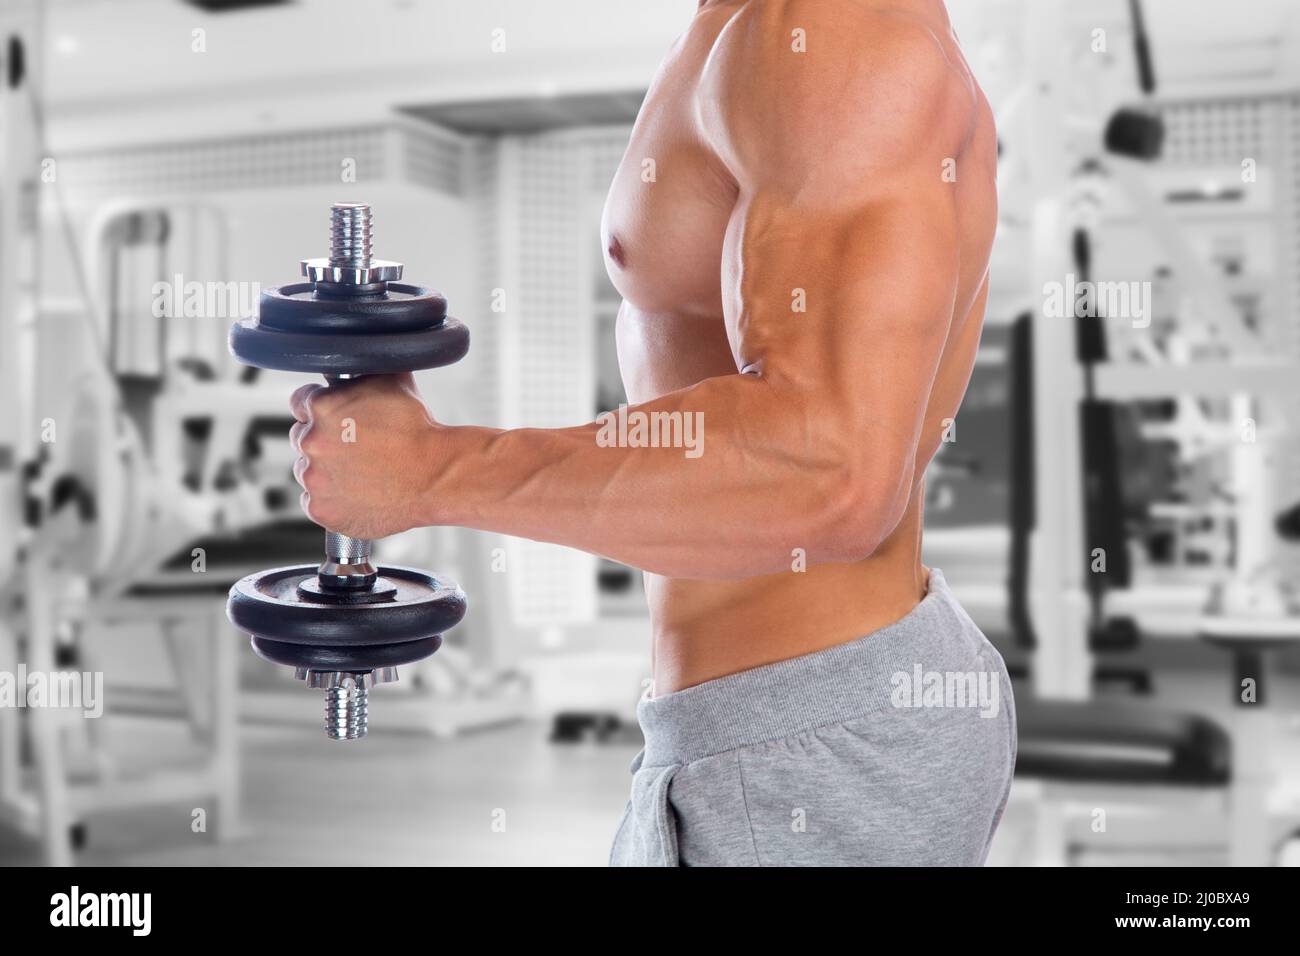 Fuerza poder fuerte muscular bíceps brazo gimnasio culturismo musculos musculos musculación mancuerna Foto de stock